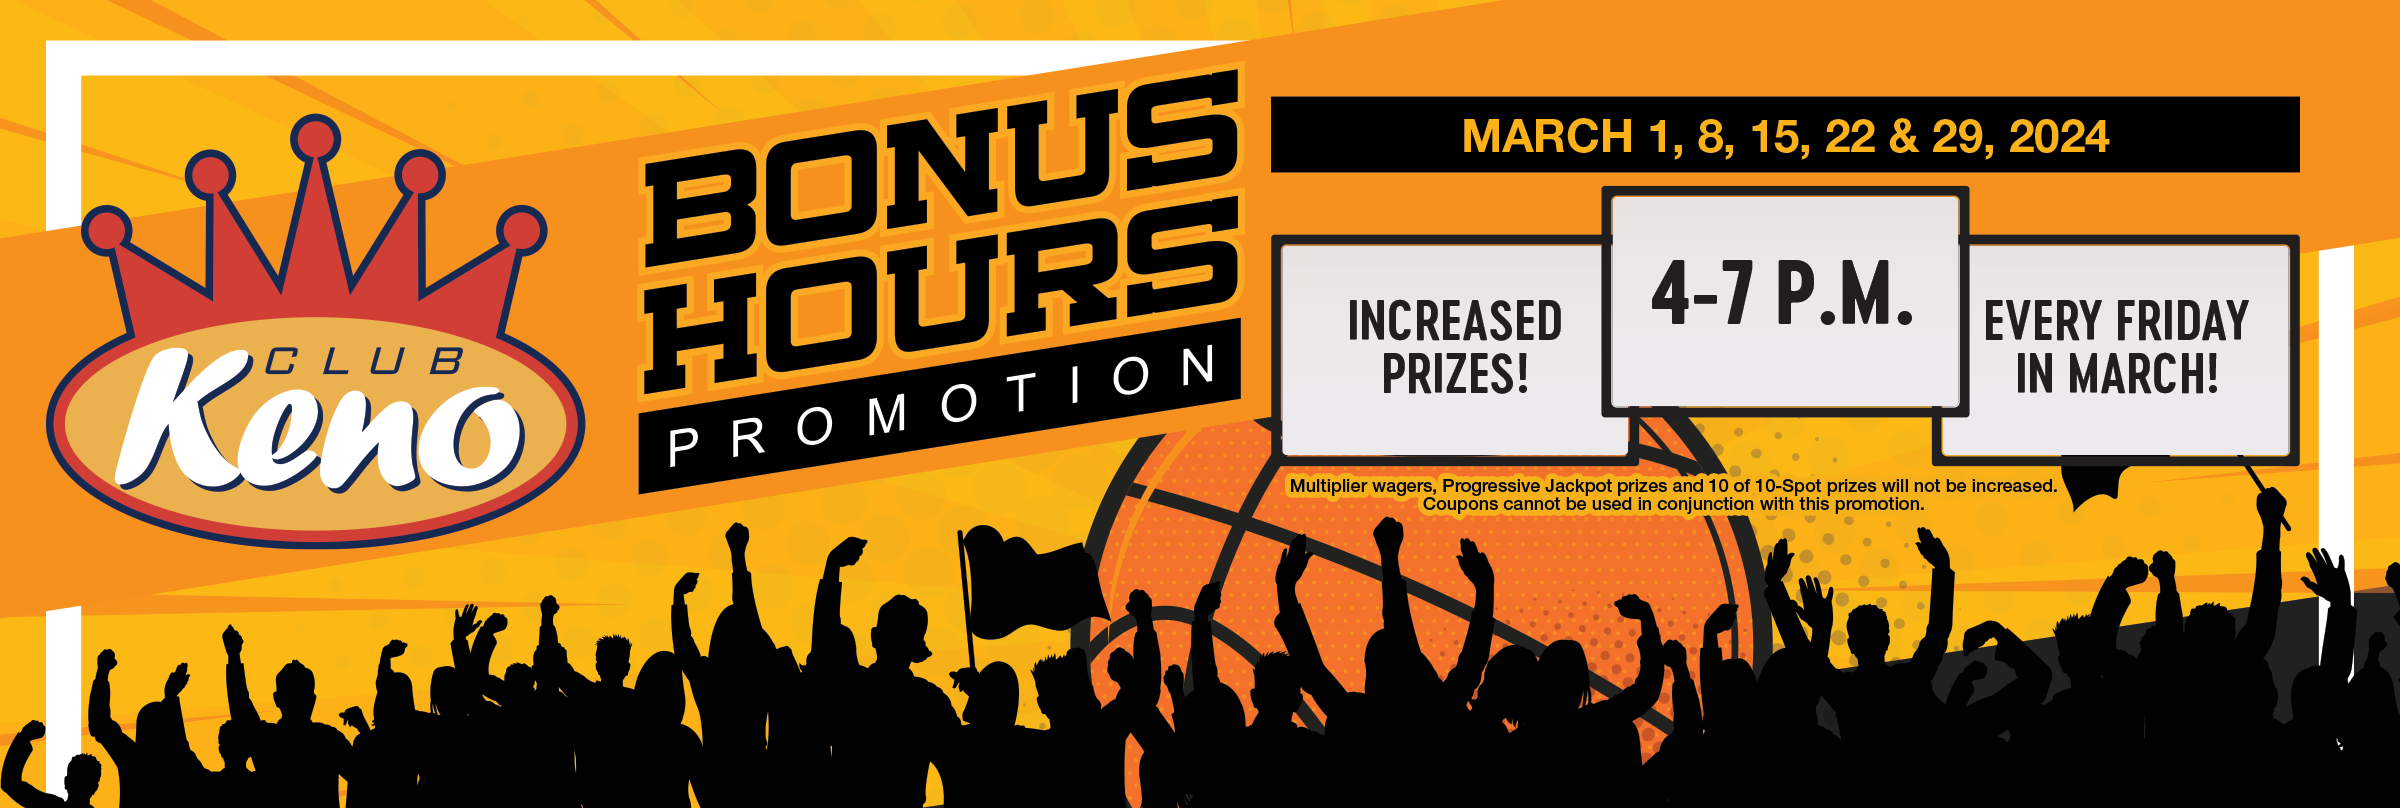 Club Keno Bonus Hours March